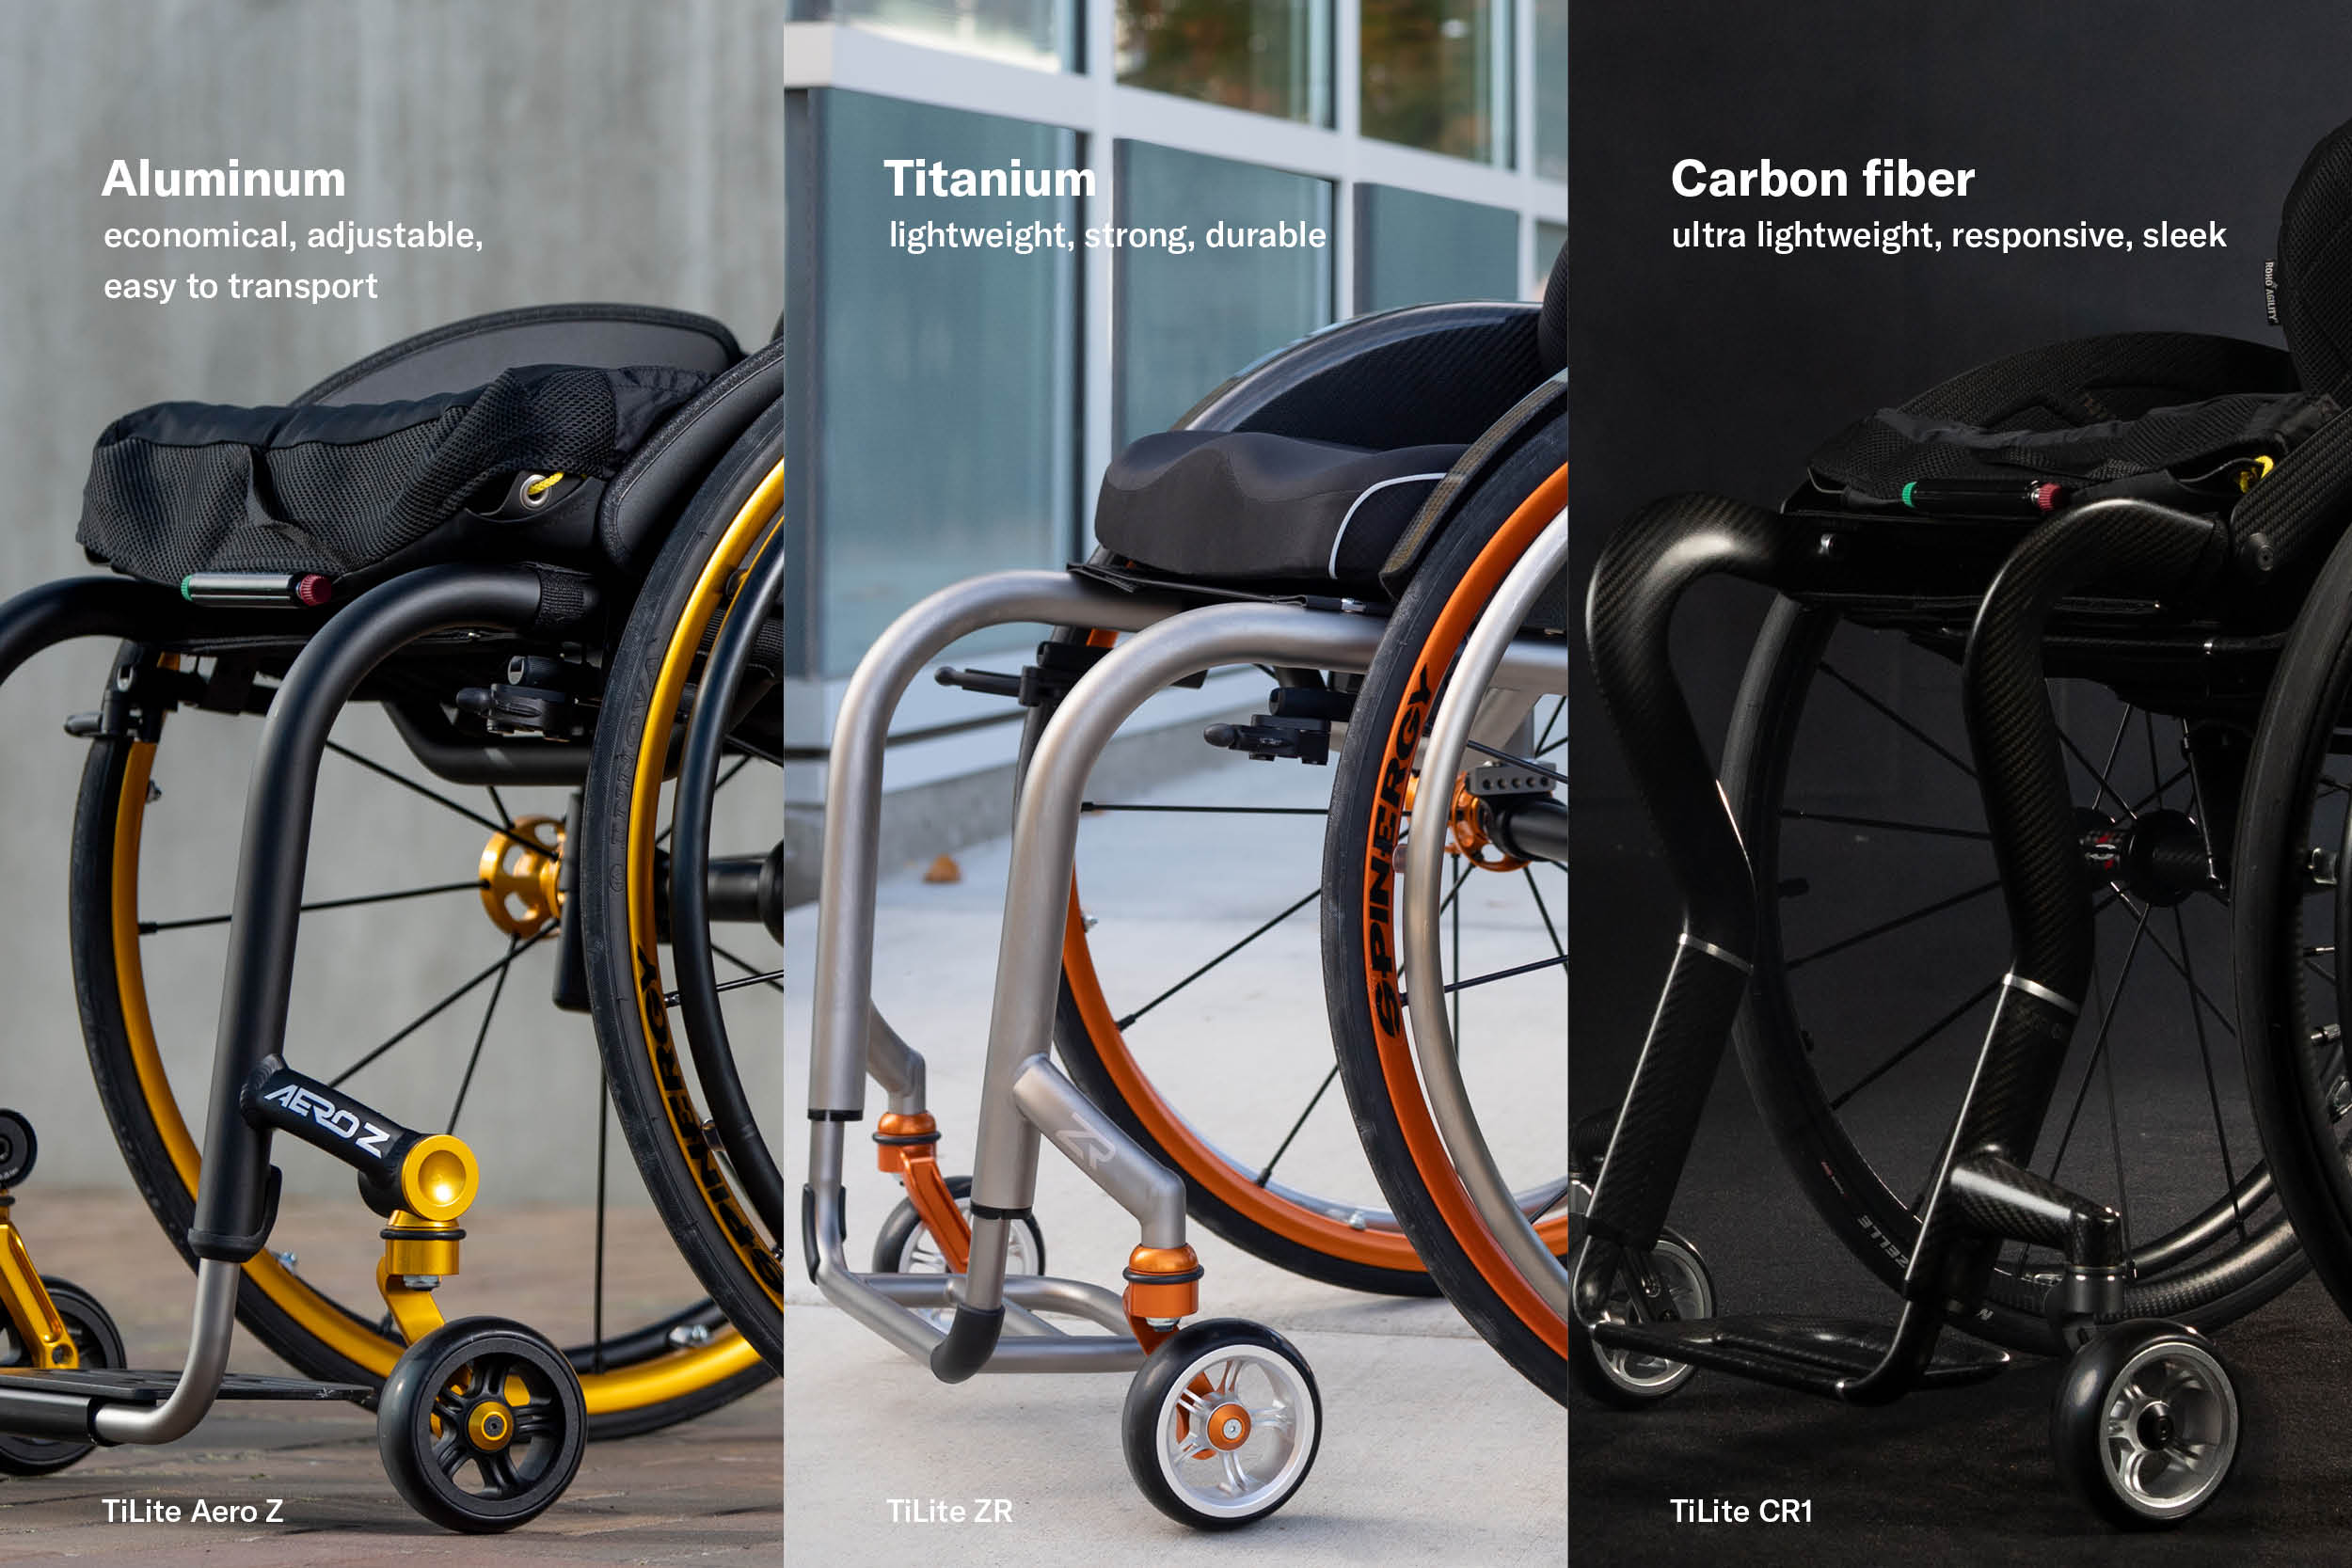 Manual wheelchair materials: aluminum, titanium, and carbon fiber